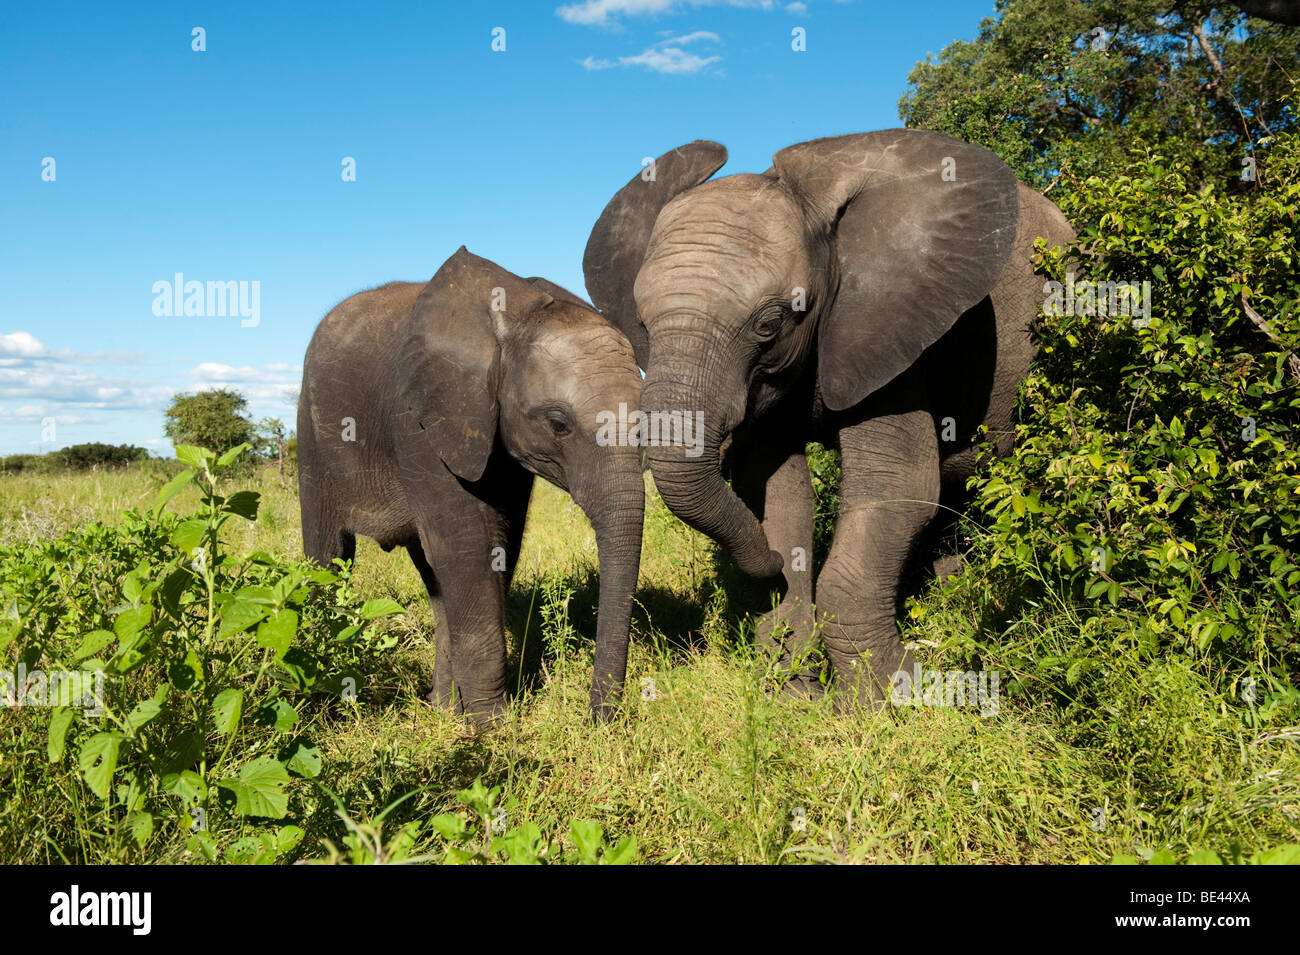 Les jeunes éléphants d'Afrique (Loxodonta africana africana) Kapama, réserve de chasse, Parc National Kruger, Afrique du Sud Banque D'Images